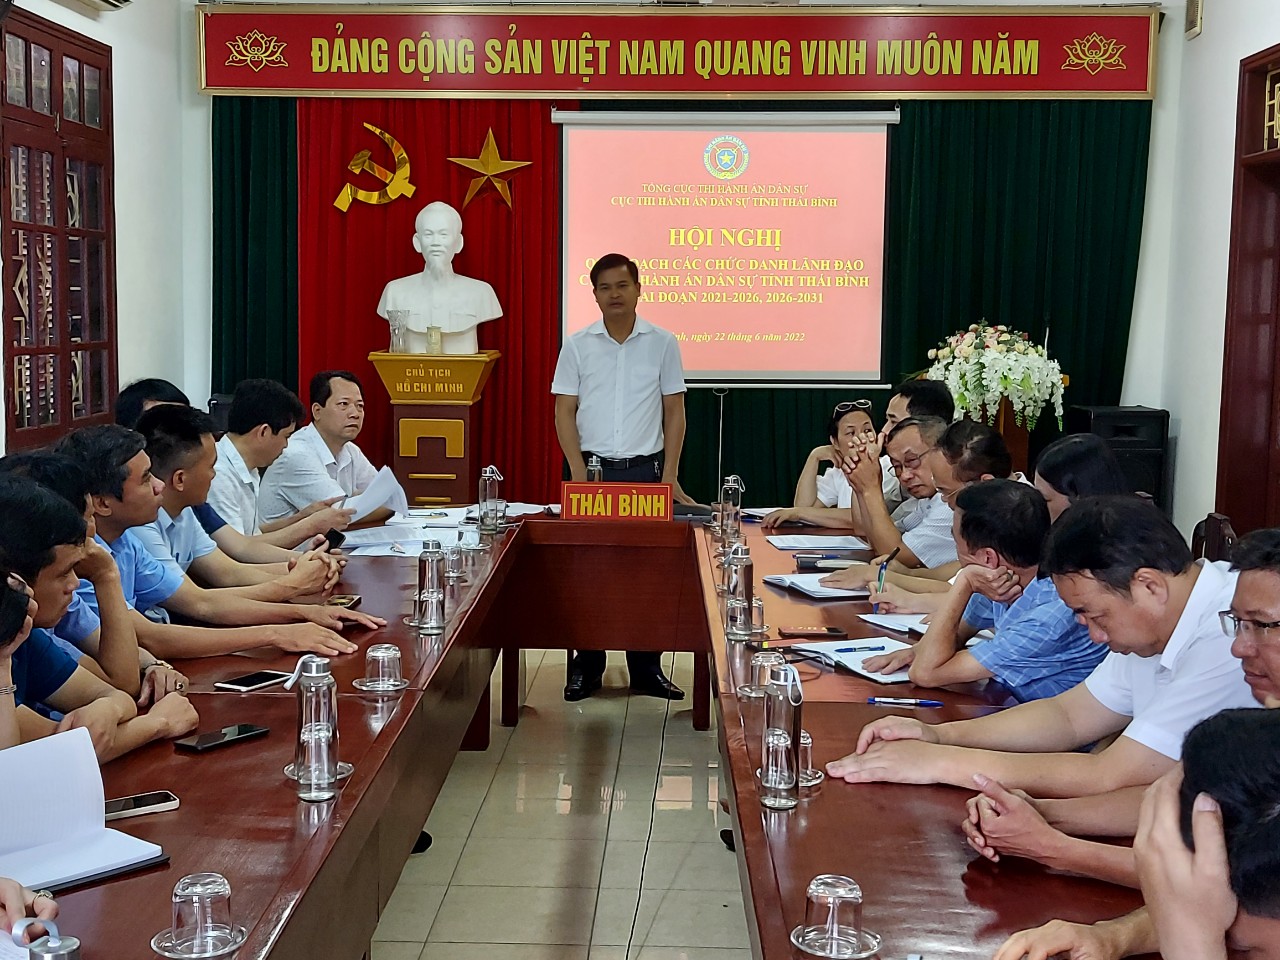 Hội nghị giới thiệu quy hoạch các chức danh lãnh đạo Cục Thi hành án dân sự tỉnh Thái Bình giai đoạn 2021-2026, 2026-2031